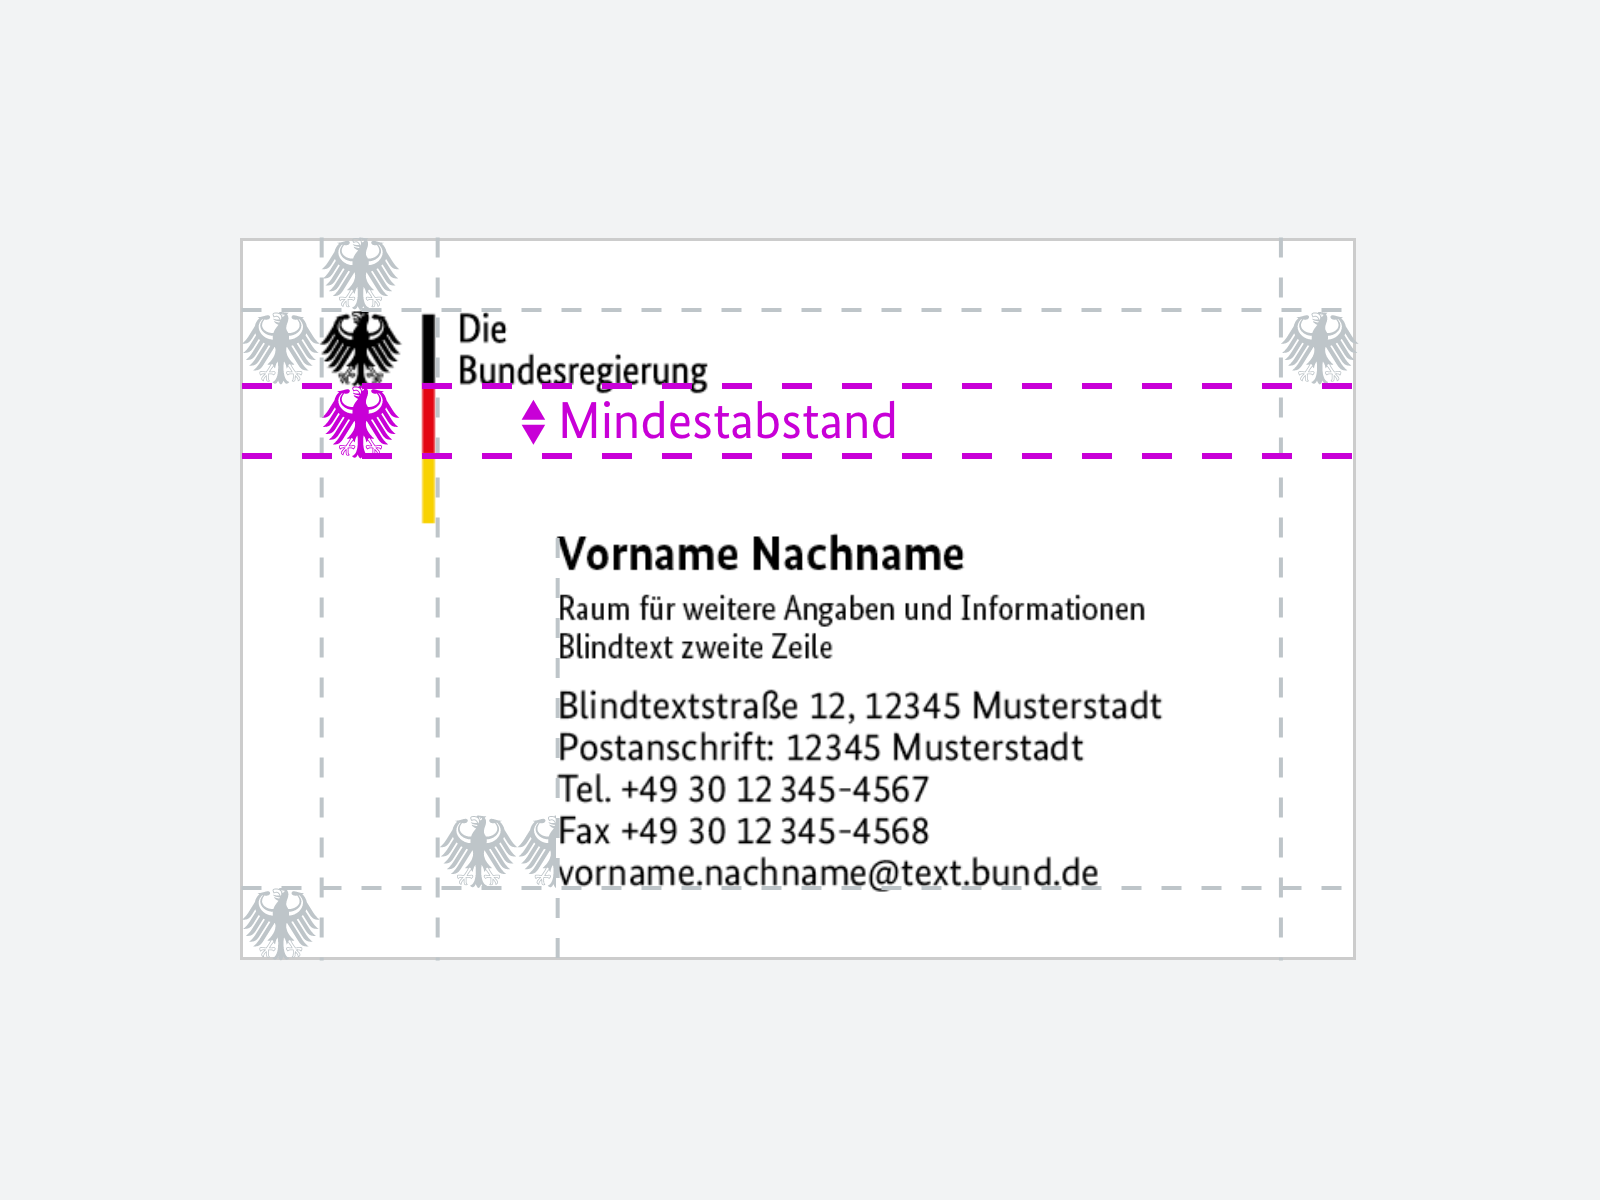 Vermaßung einer Visitenkarte mit Markierungen für den Mindestabstand zwischen Unterzeile der Bildwortmarke und Beginn des Textblocks.